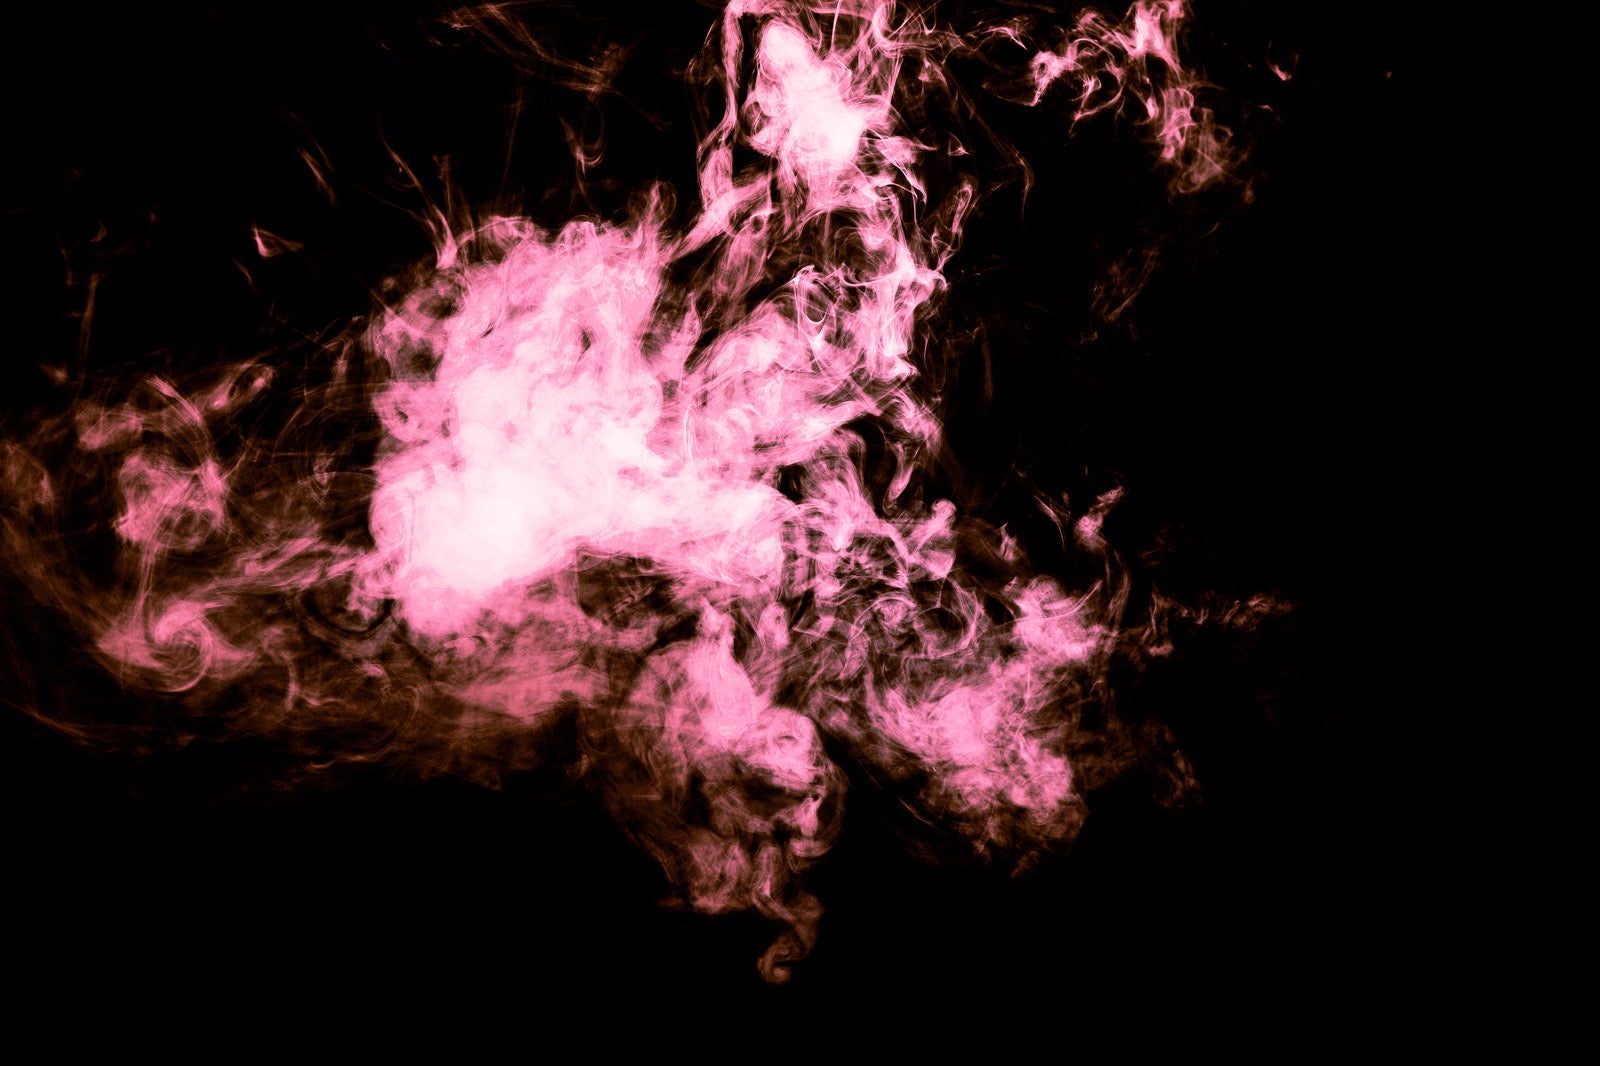 「赤い炎のような煙」の写真